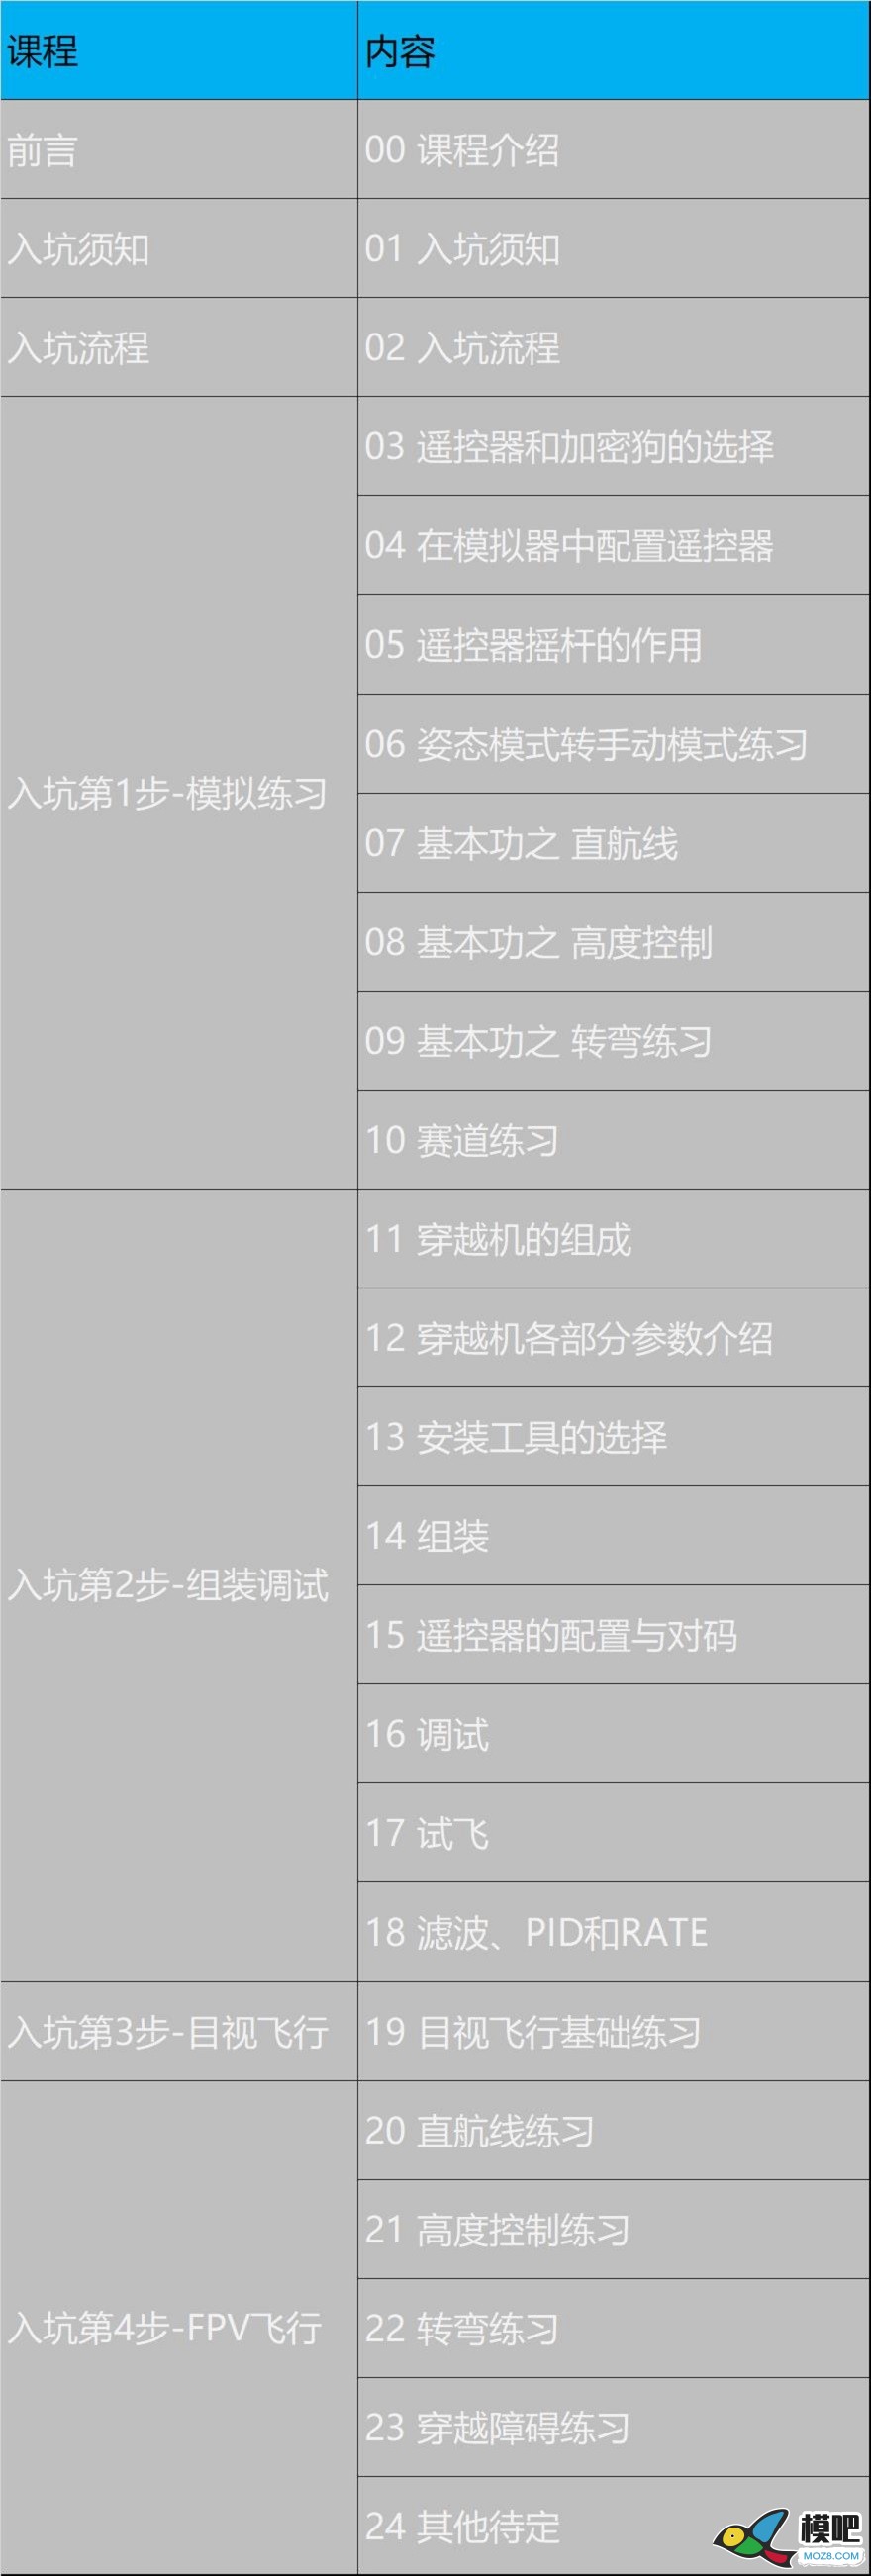 《穿越机入坑指南》已更新至3.11 穿越机的可选配件 穿越机,电池,天线,电调,电机 作者:yangjinduo 2879 